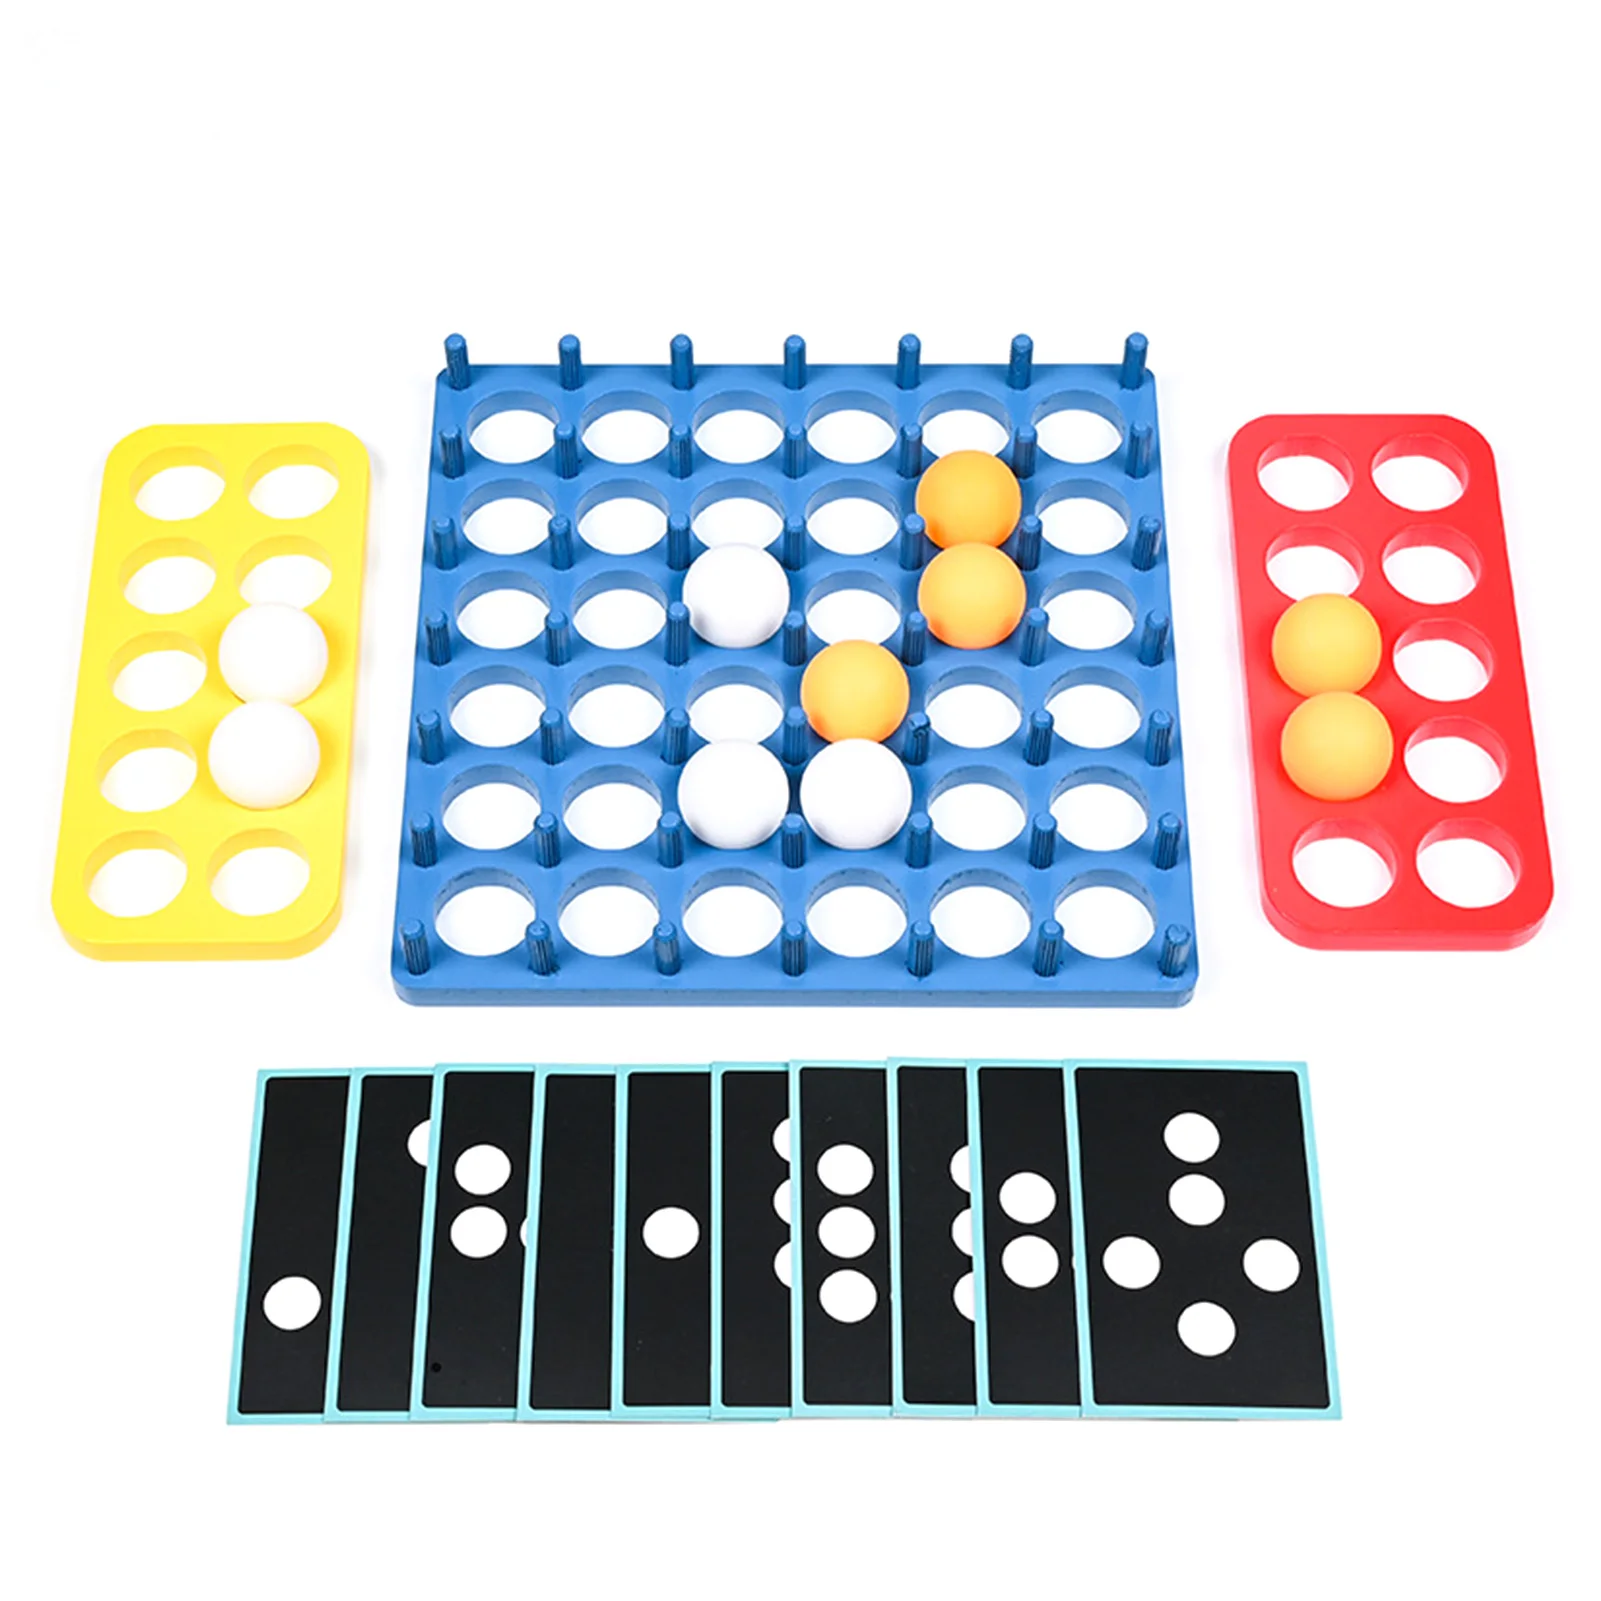 

Детская игра-пазл для тренировки концентрации Веселая интерактивная игрушка для пинбола интерактивная игра для соревнований родителей и д...